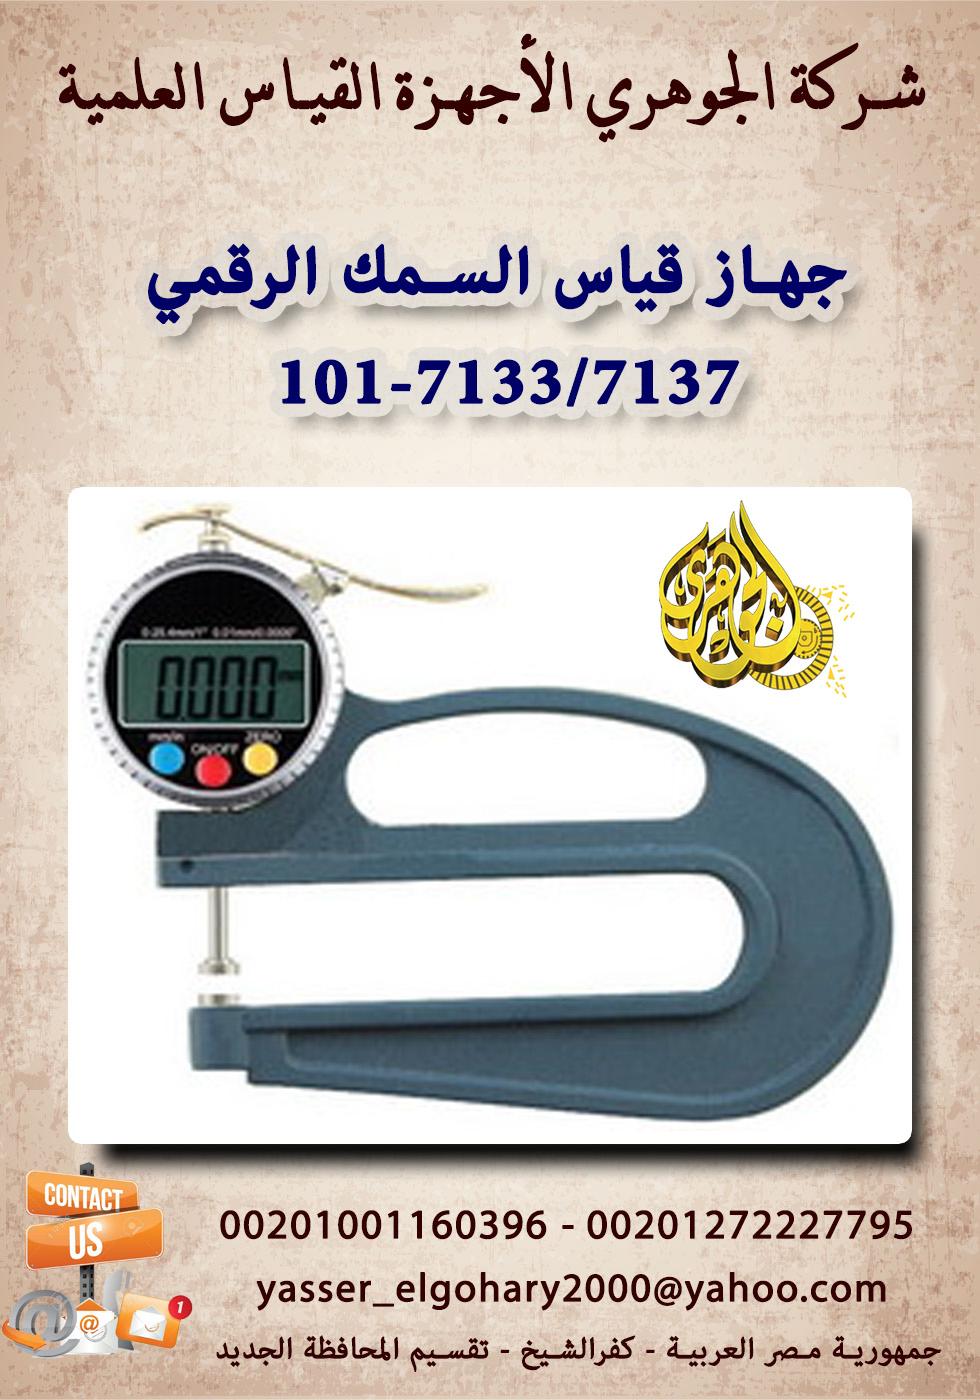 جهاز قياس السمك الرقمي 101-7133/7137 850988085